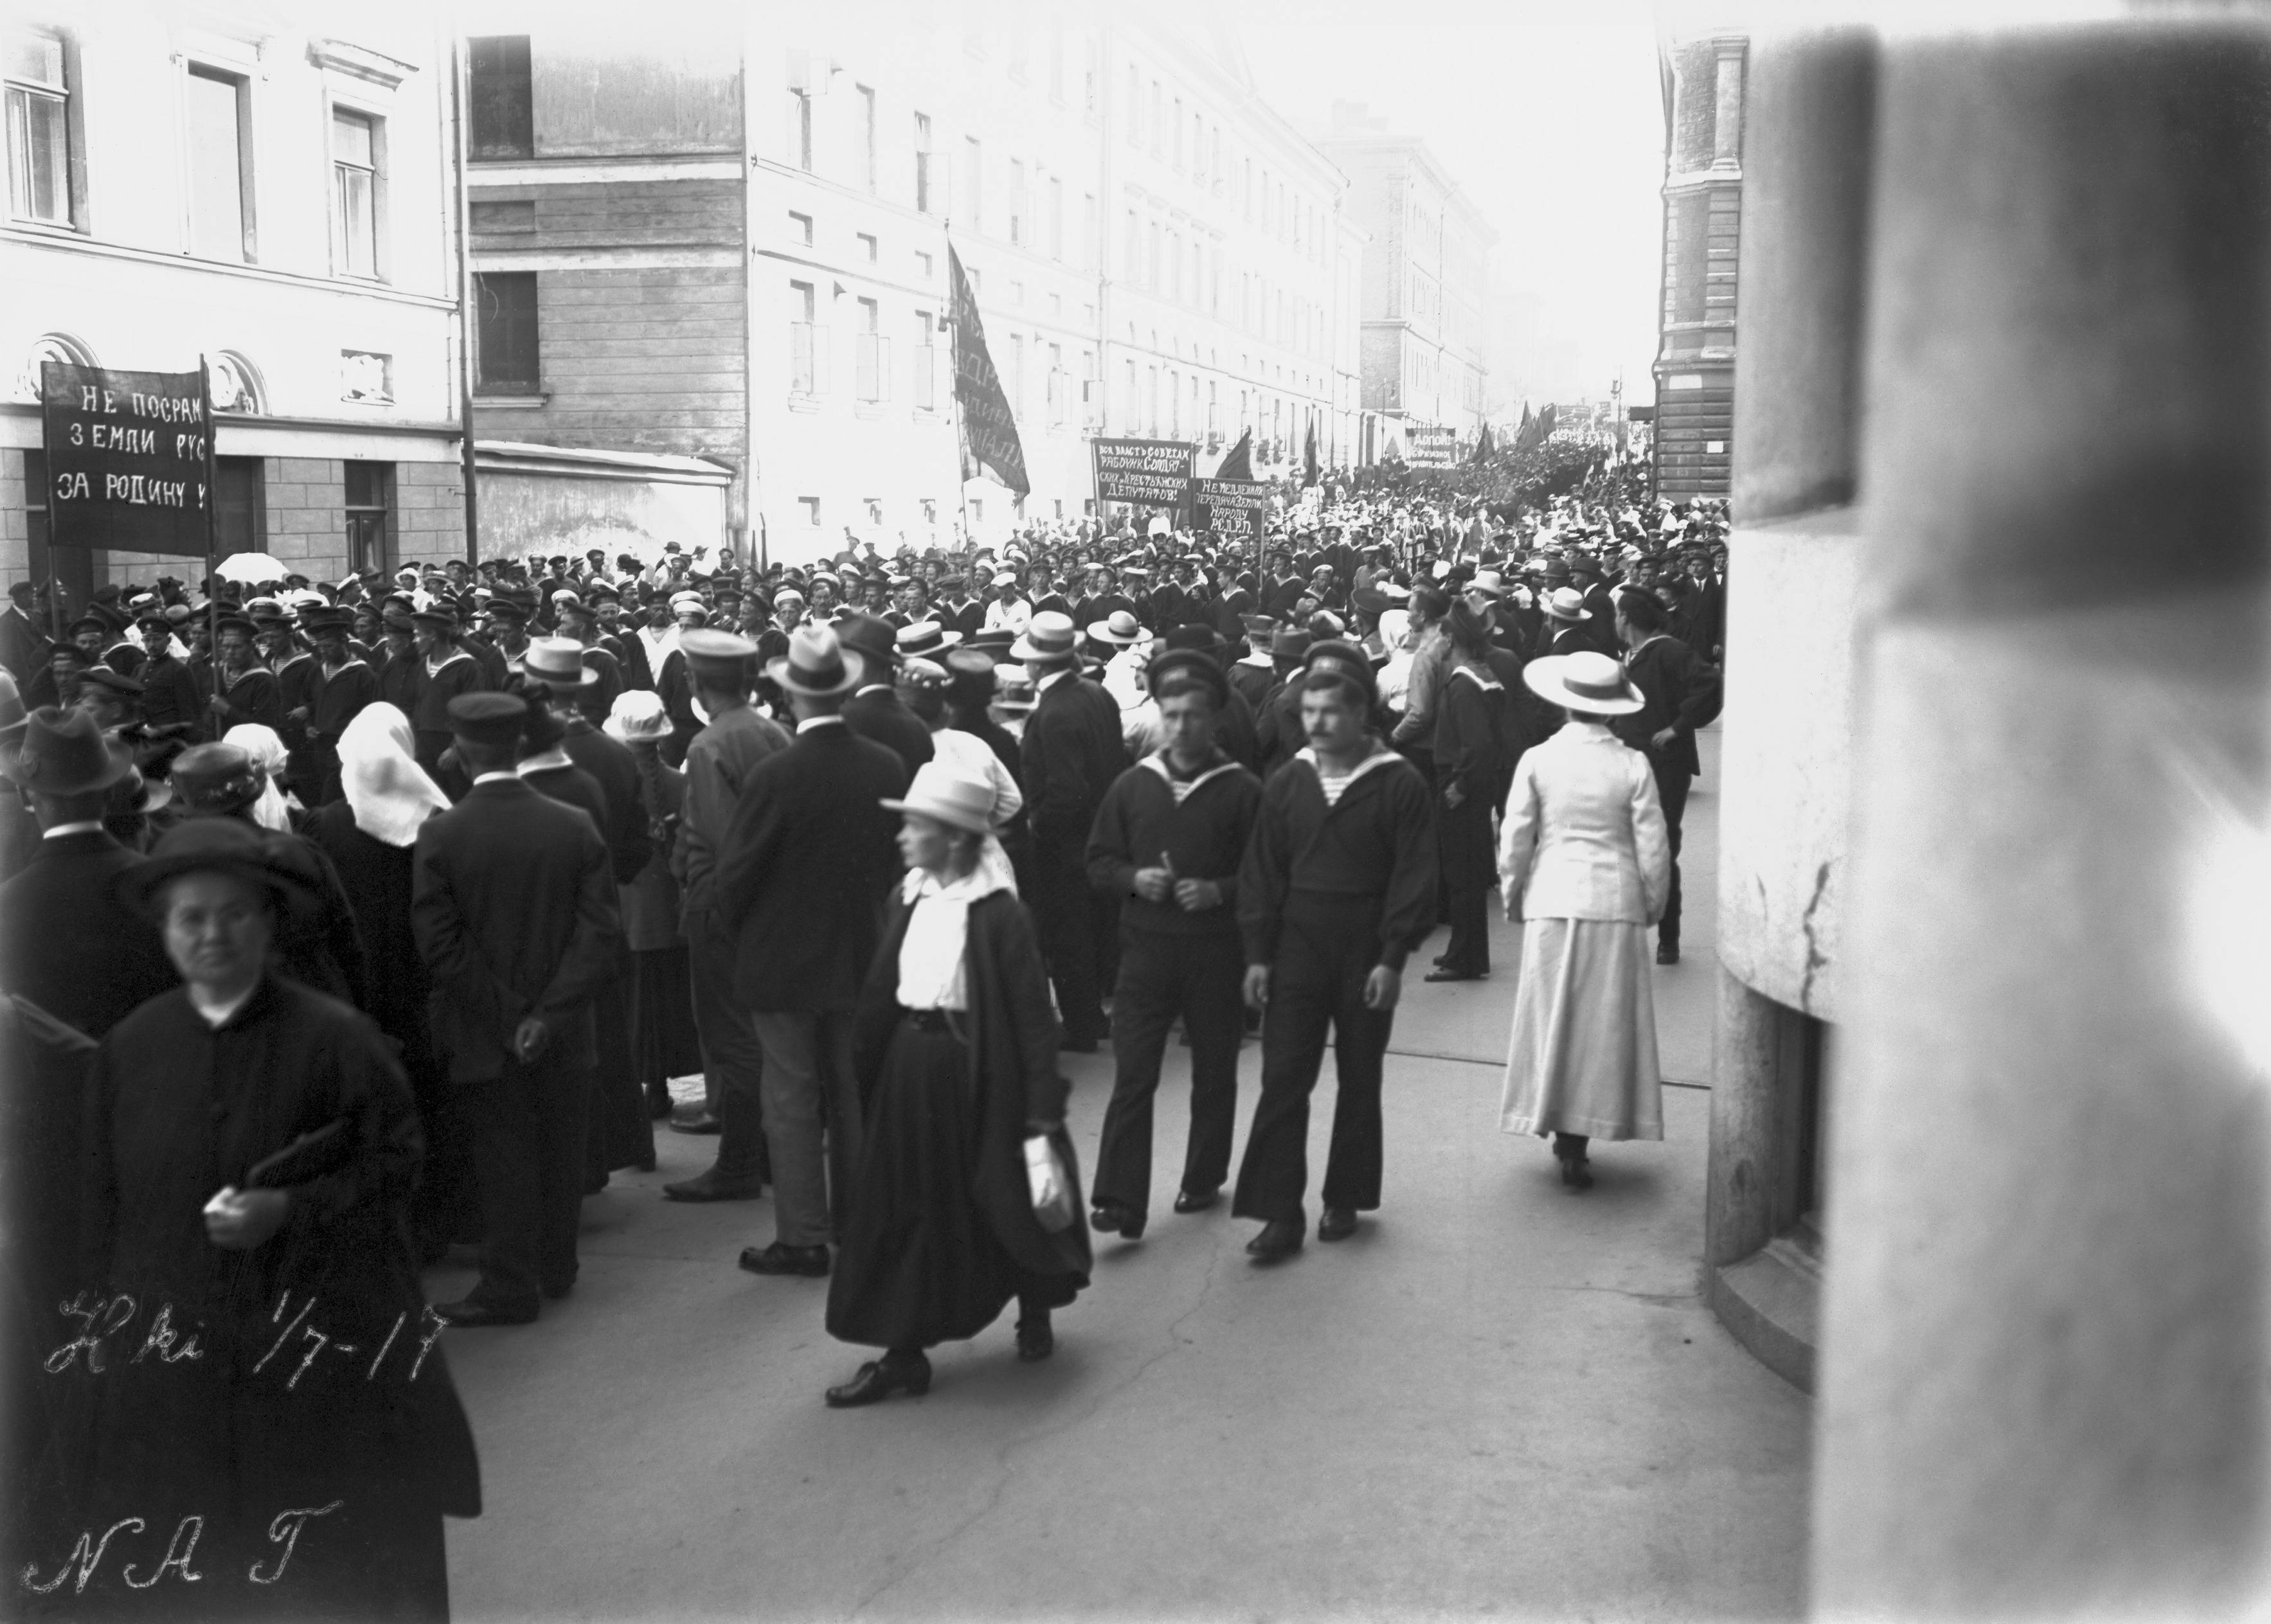 Venäläisten matruusien mielenosoituskulkue Kasarmikadulla heinäkuun 1. päivänä 1917.